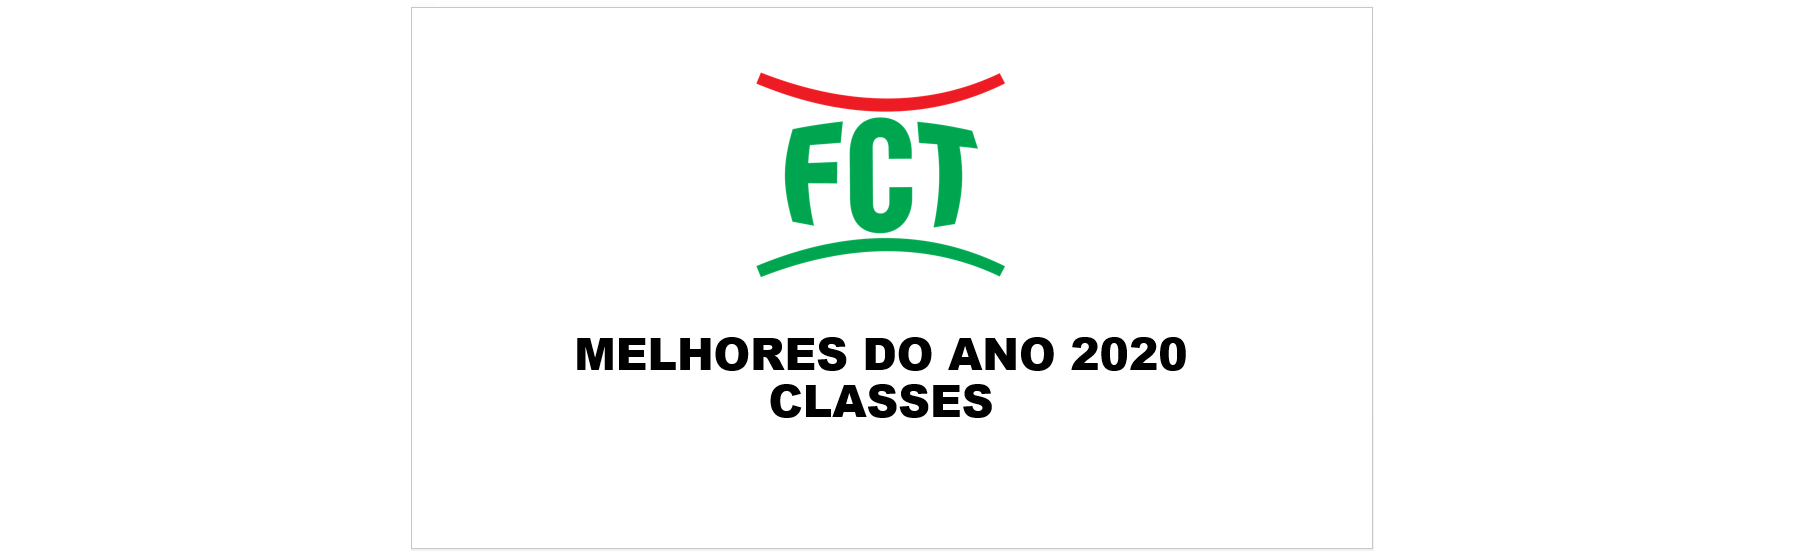 MELHORES DO ANO 2020 - CATEGORIA CLASSES